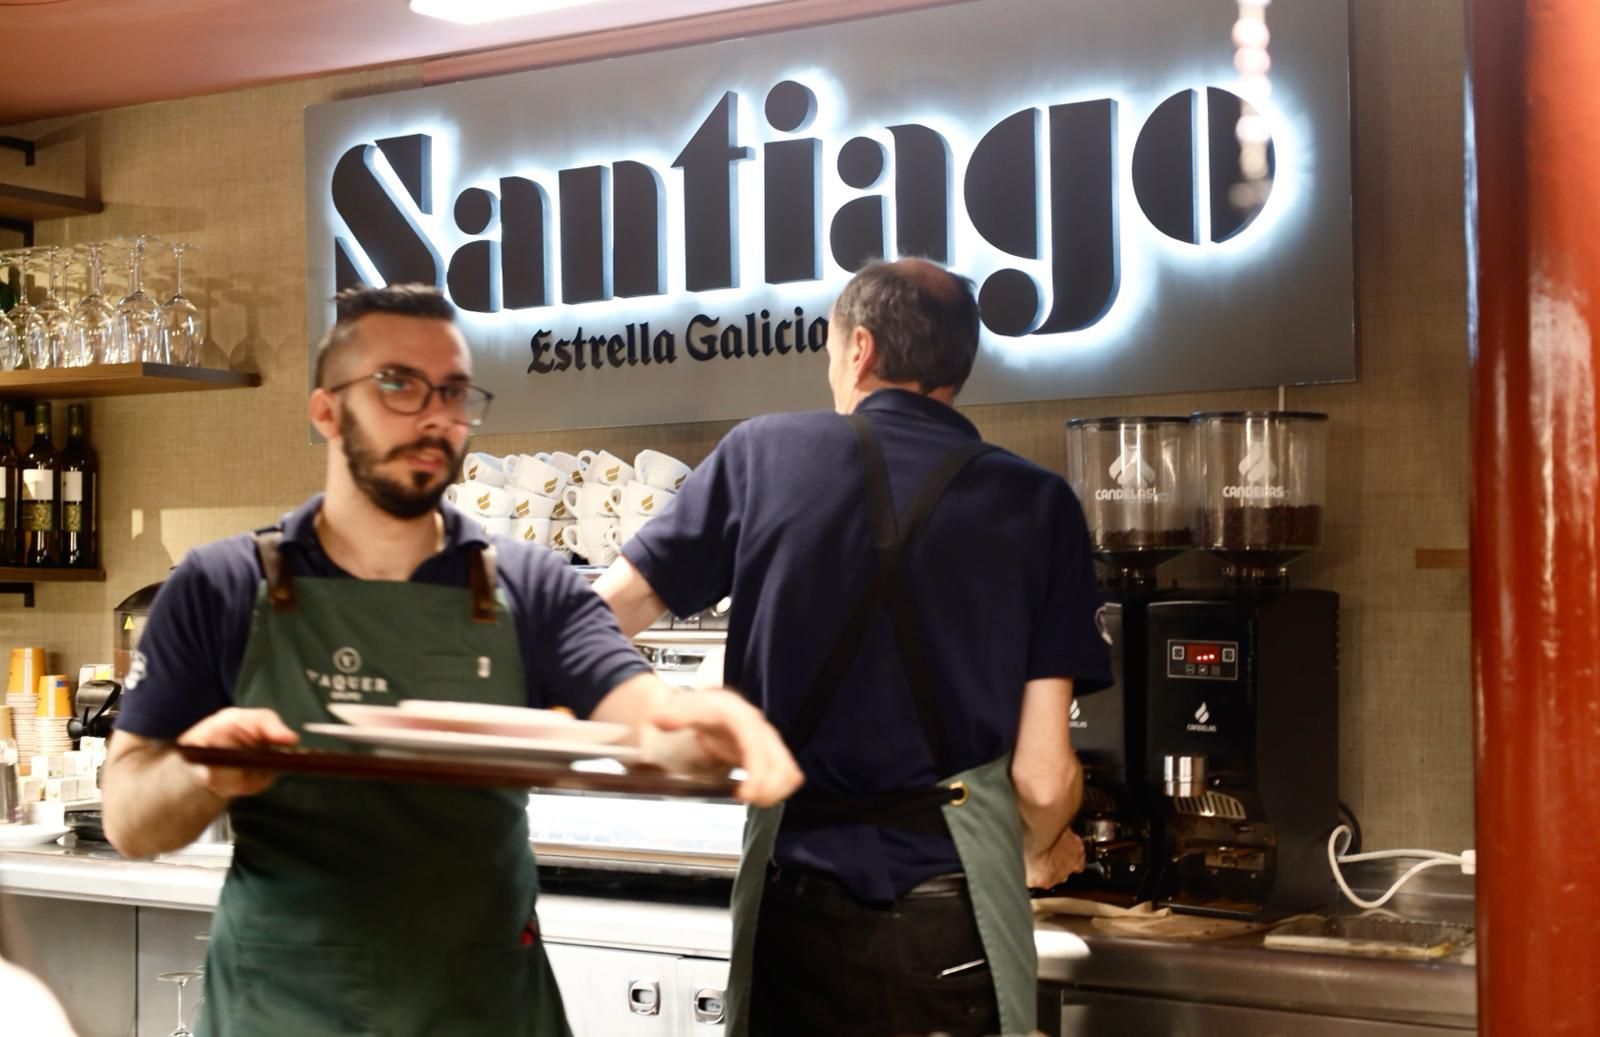 EN IMÁGENES | Así ha quedado la Cafetería Santiago tras su reforma